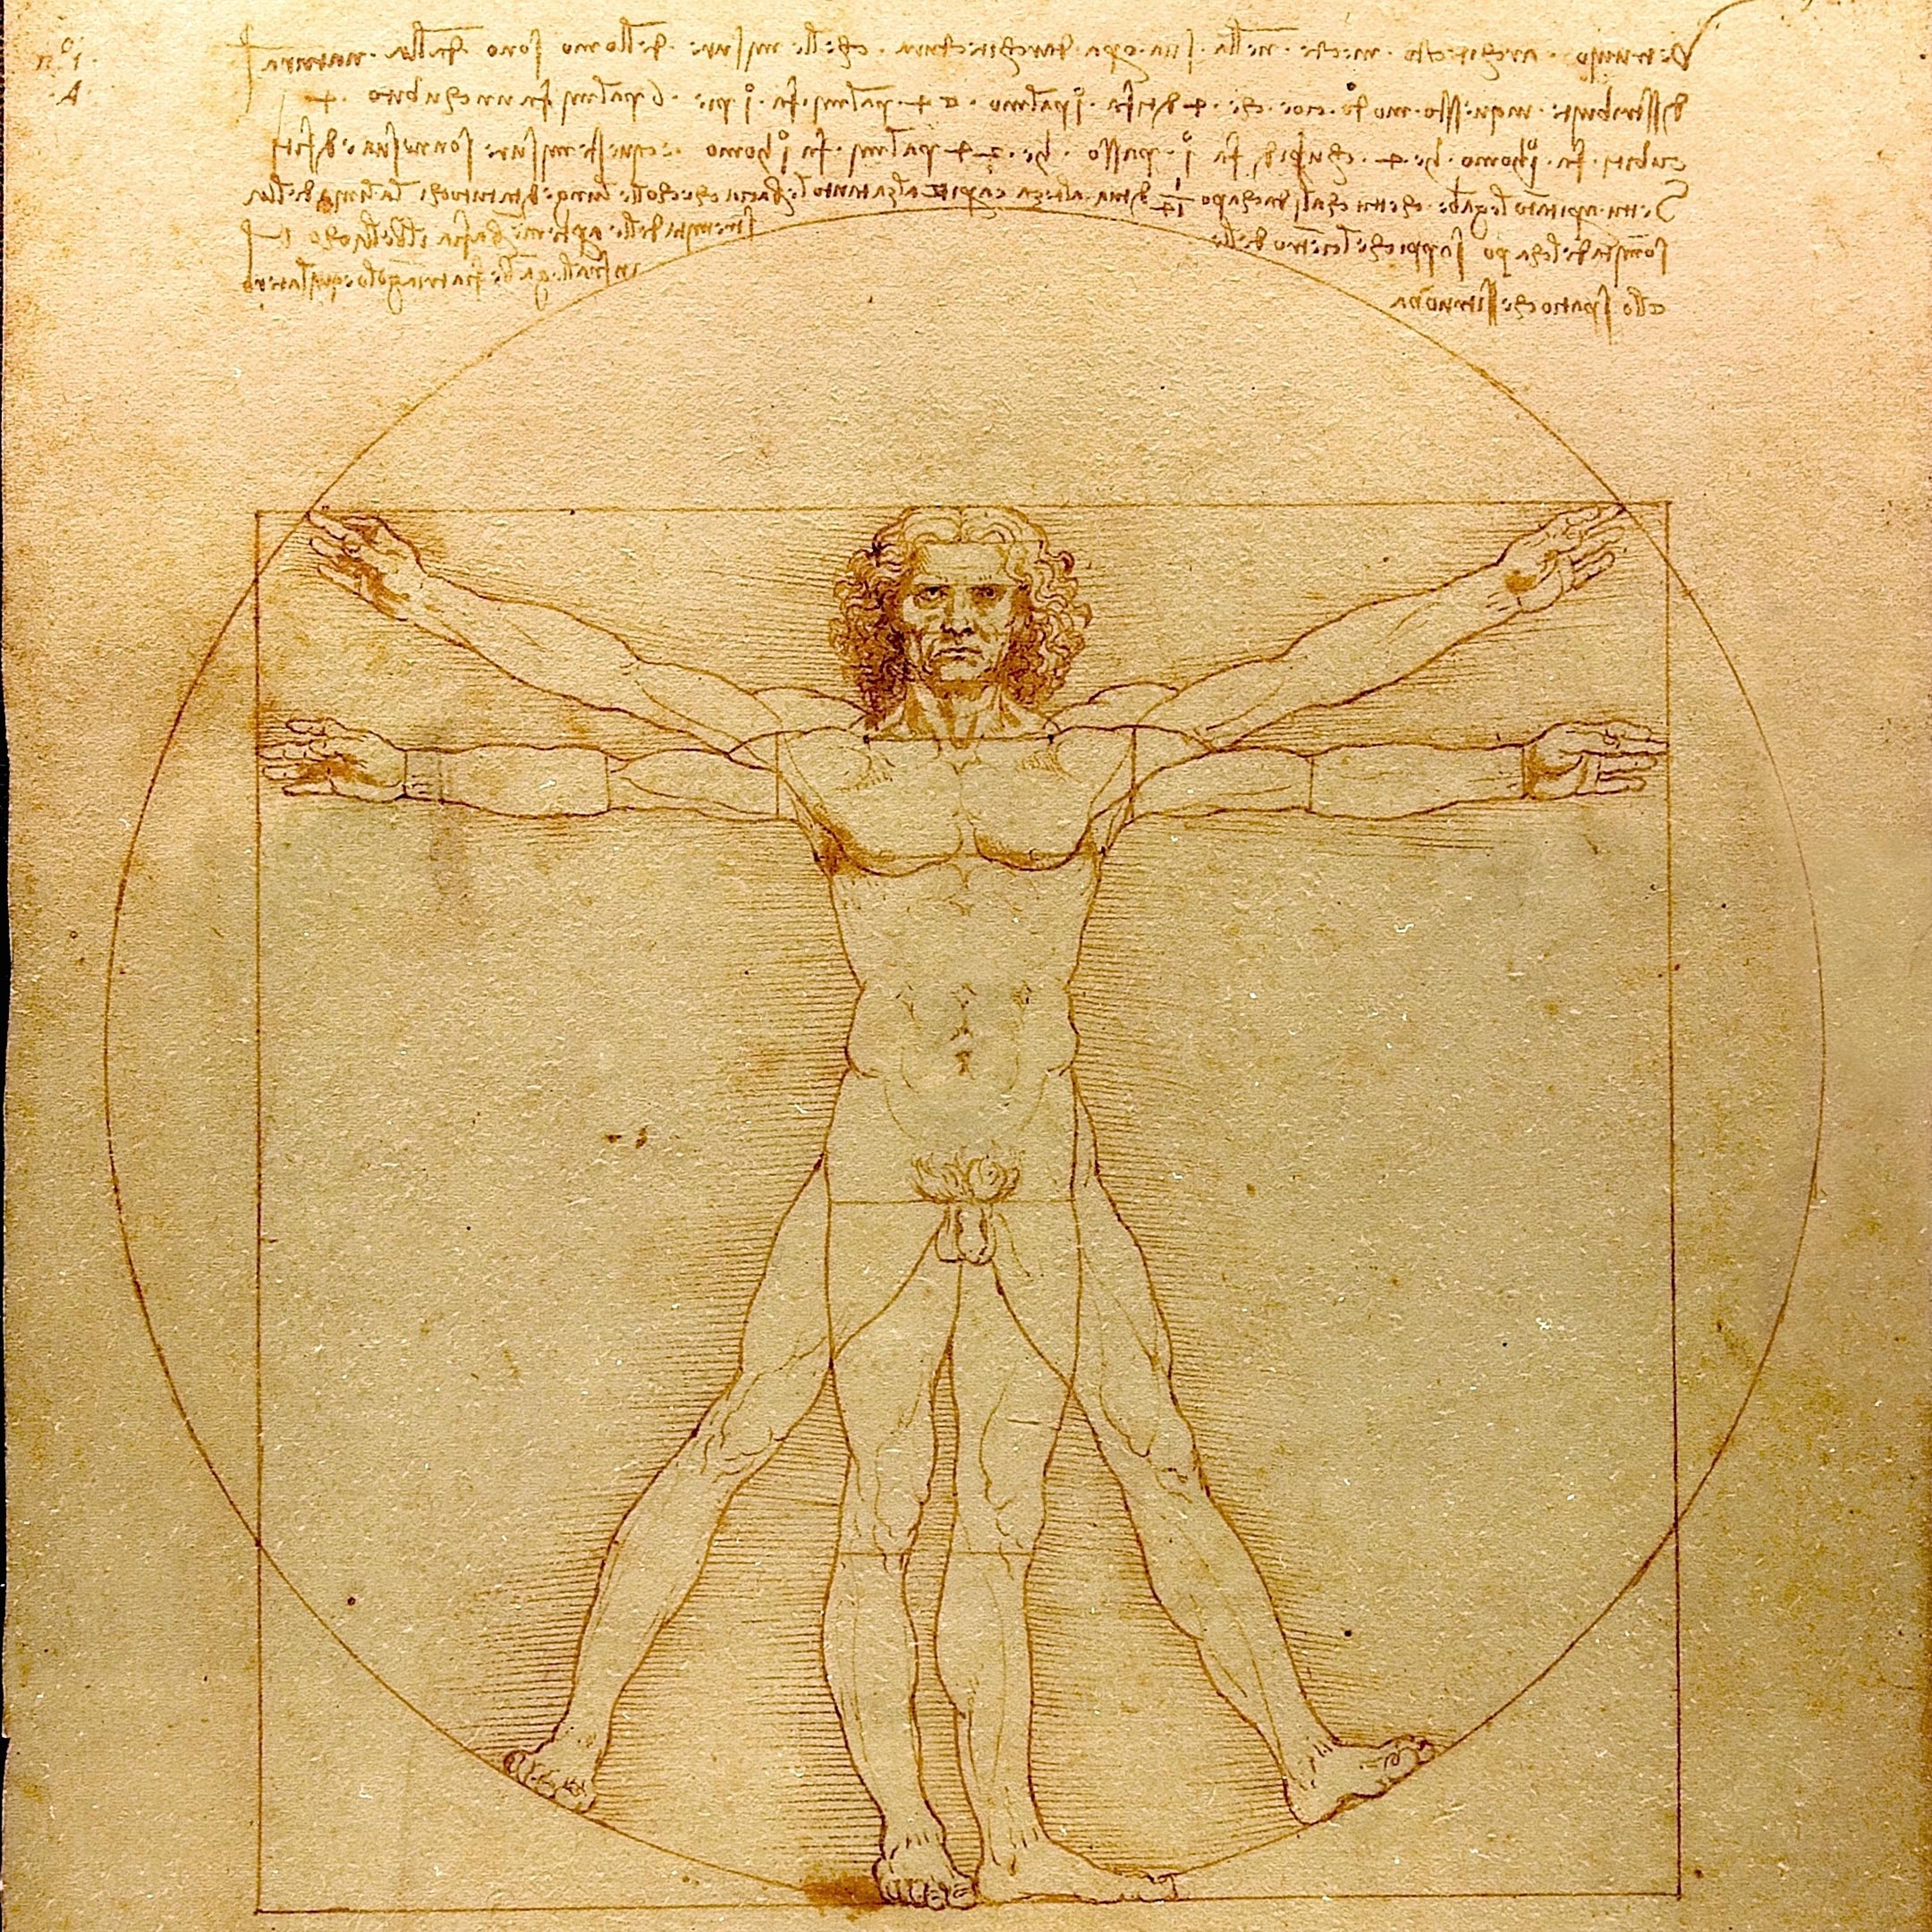 Surprising Results of a Decade-Long Investigation Search for Leonardo da Vinci's DNA